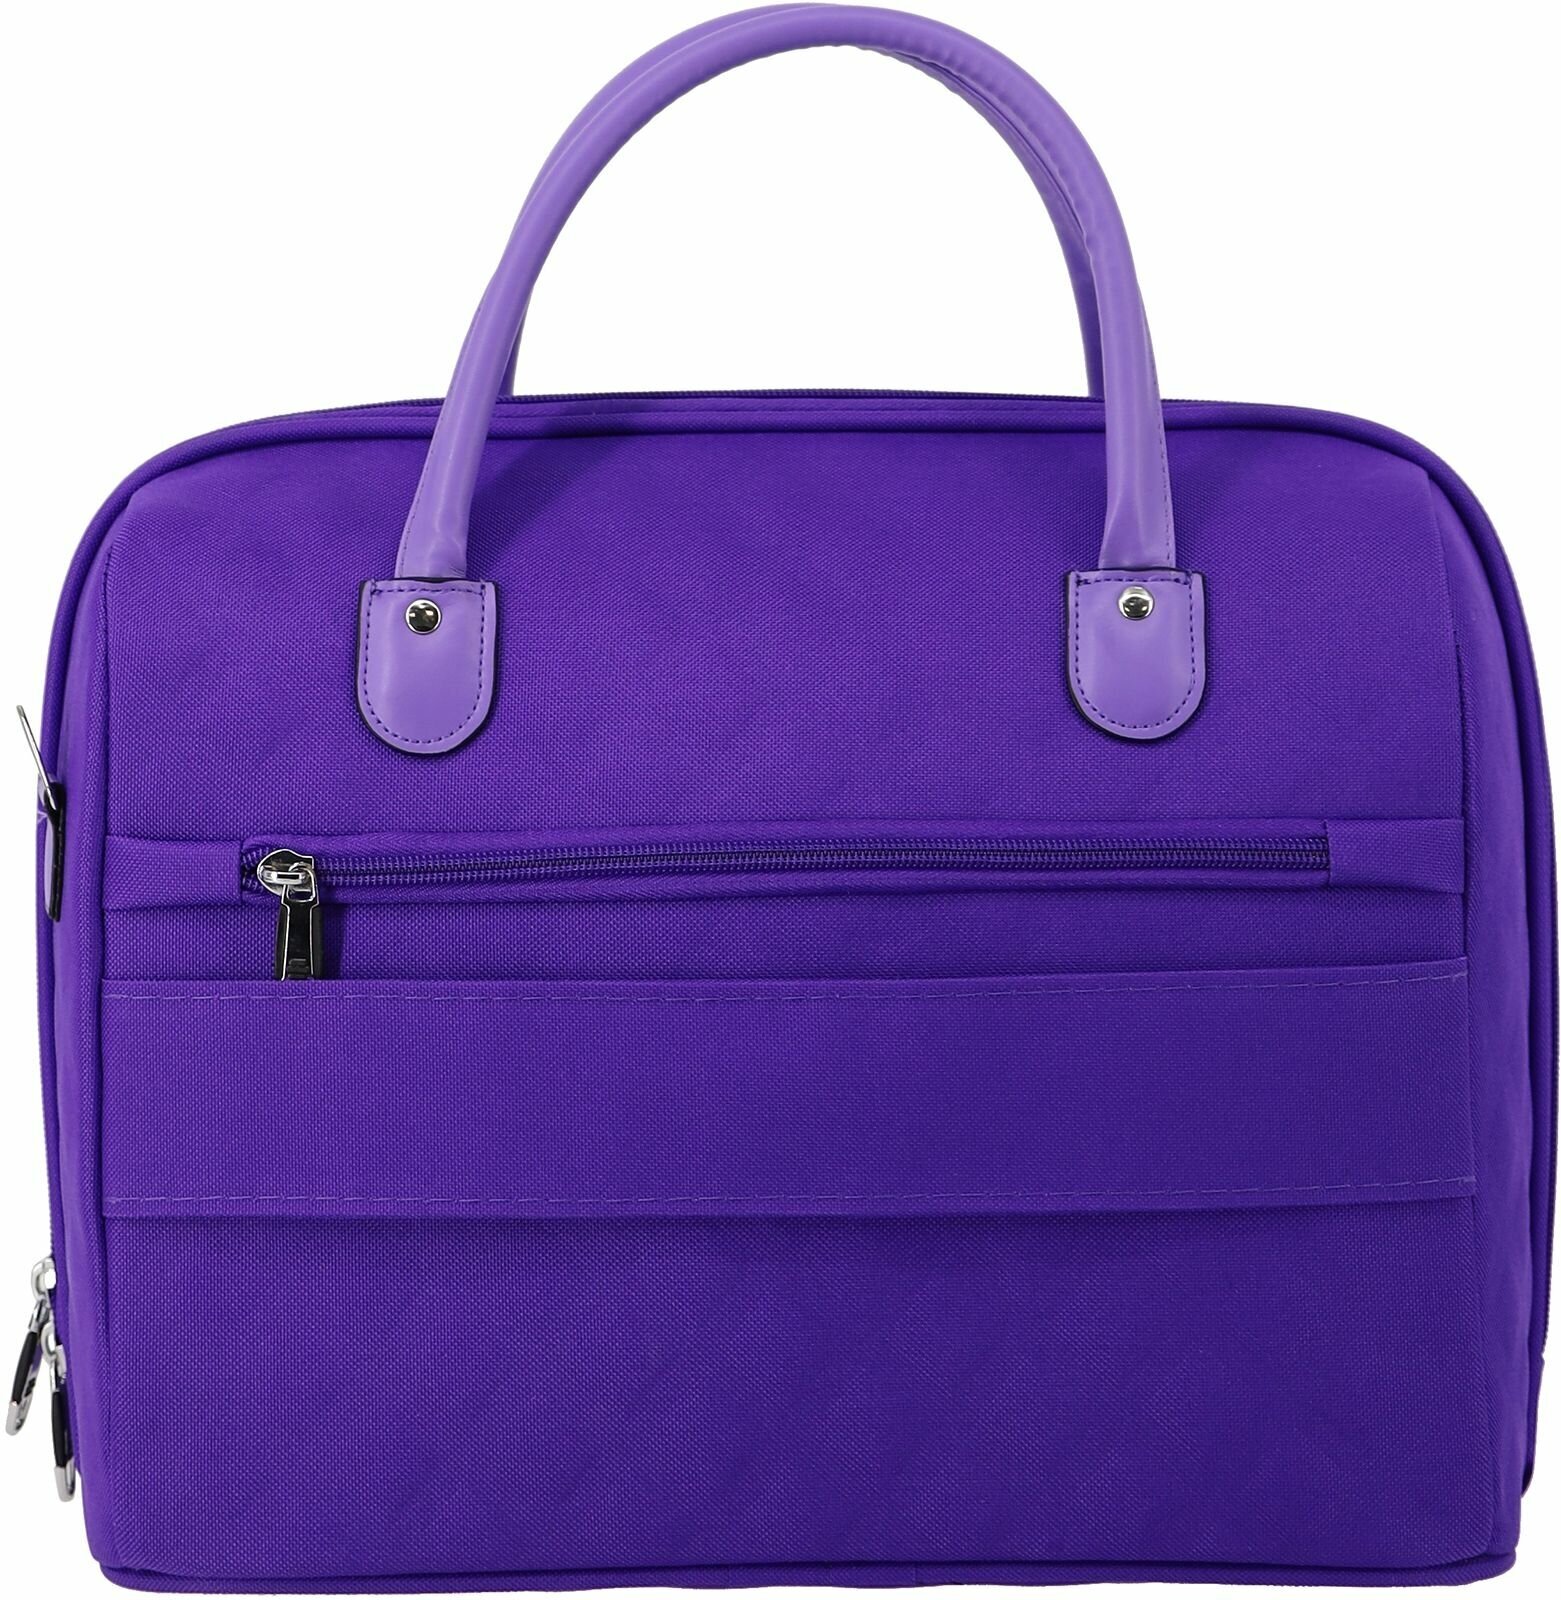 Женская дорожная сумка с ремнем на ручку чемодана Рион+ (RION+) / ручная кладь / саквояж для города, R236, Тканевая, 20 литров, сиреневый - фотография № 9